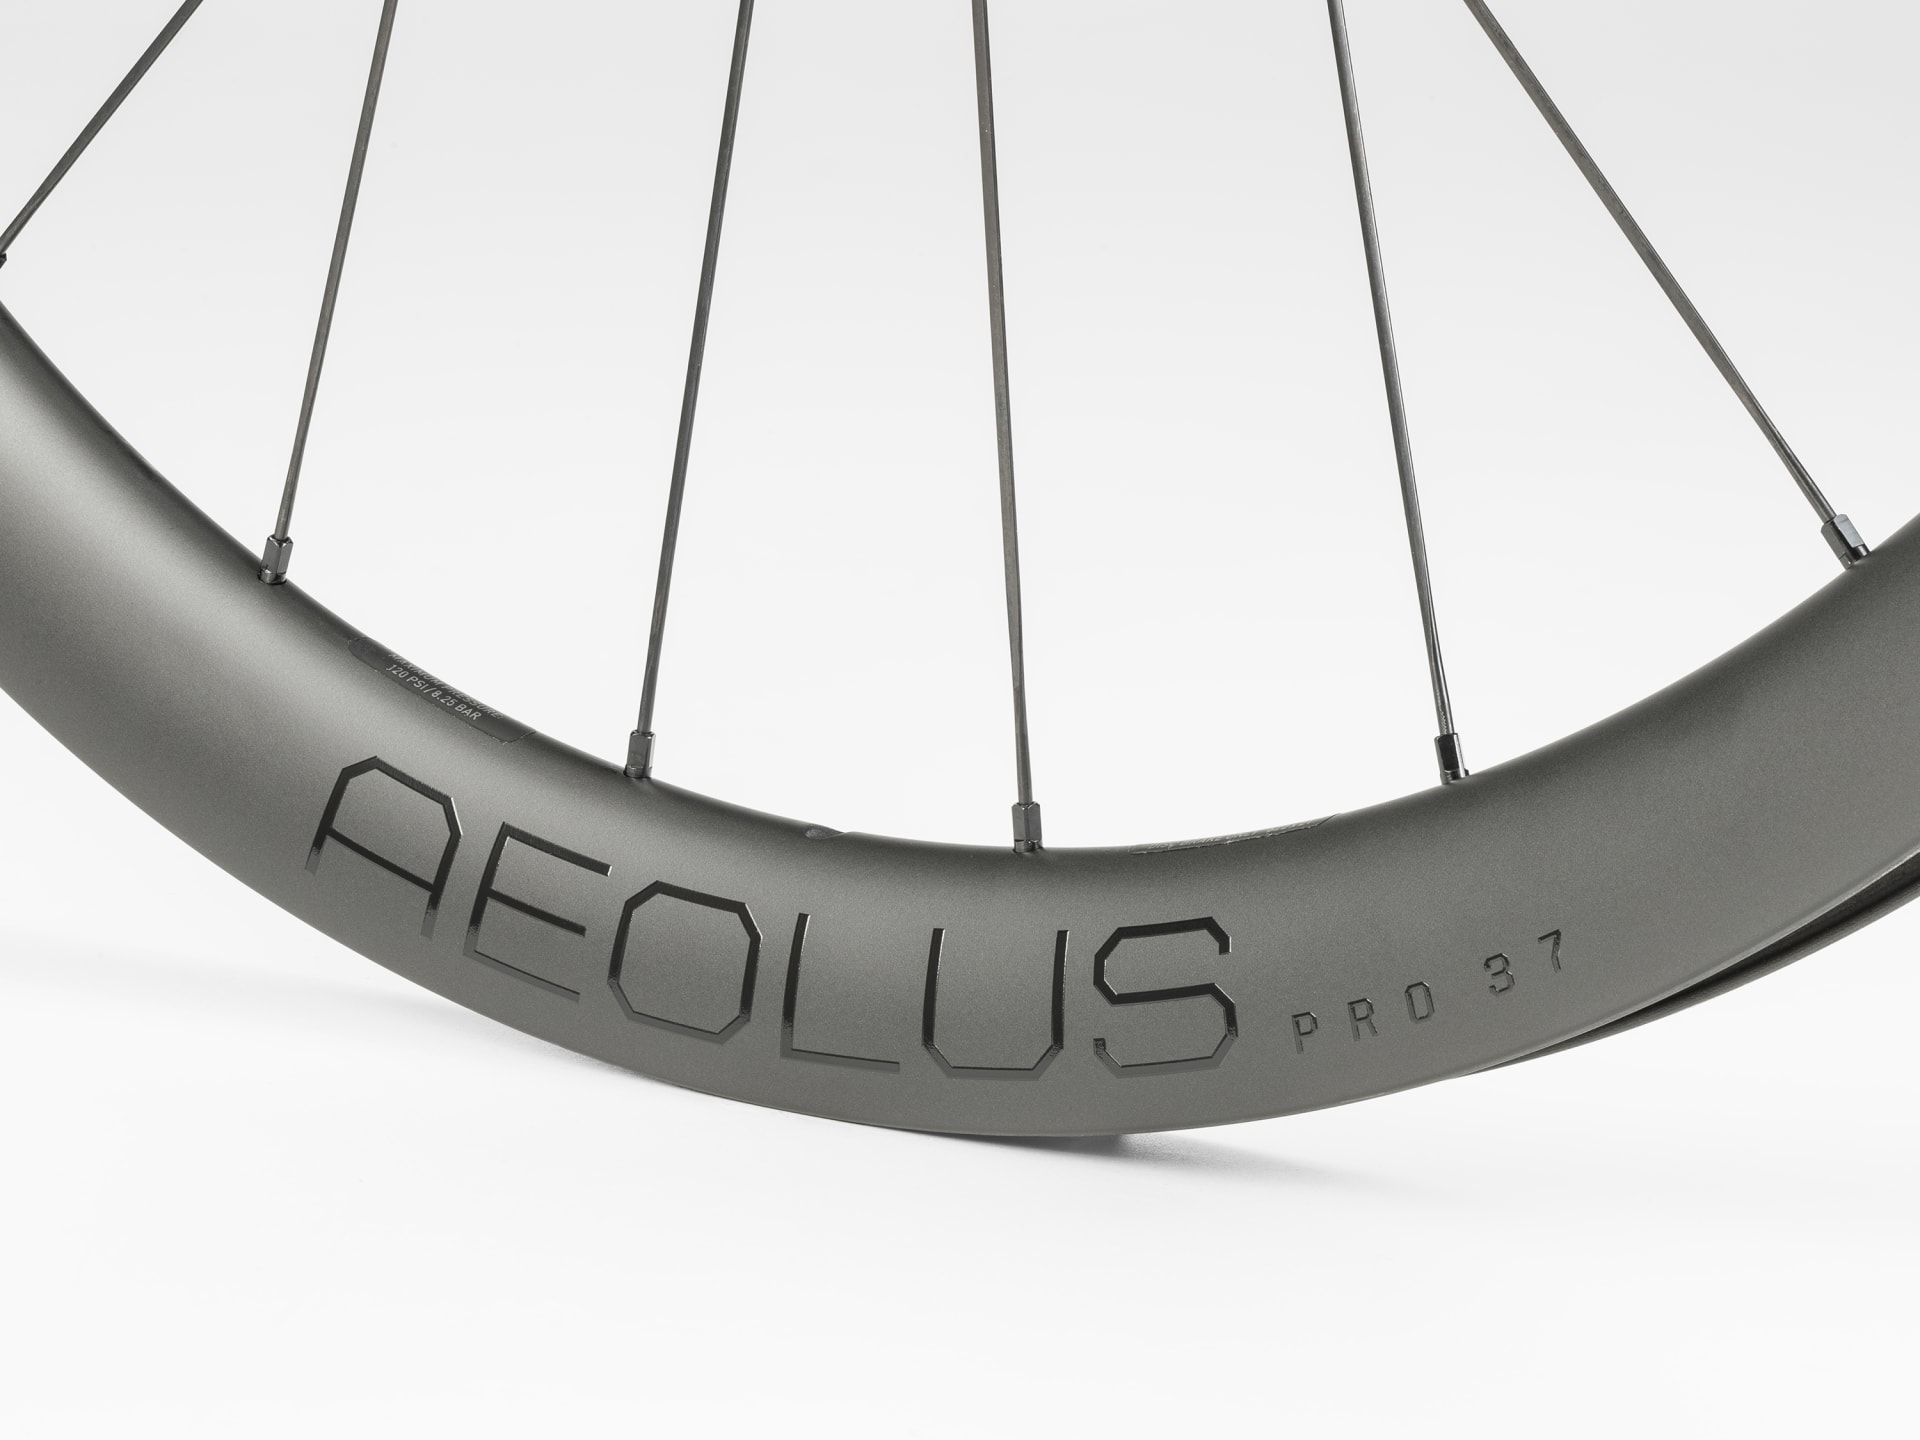 Bontrager Aeolus Pro TLR Disc Road Wheel